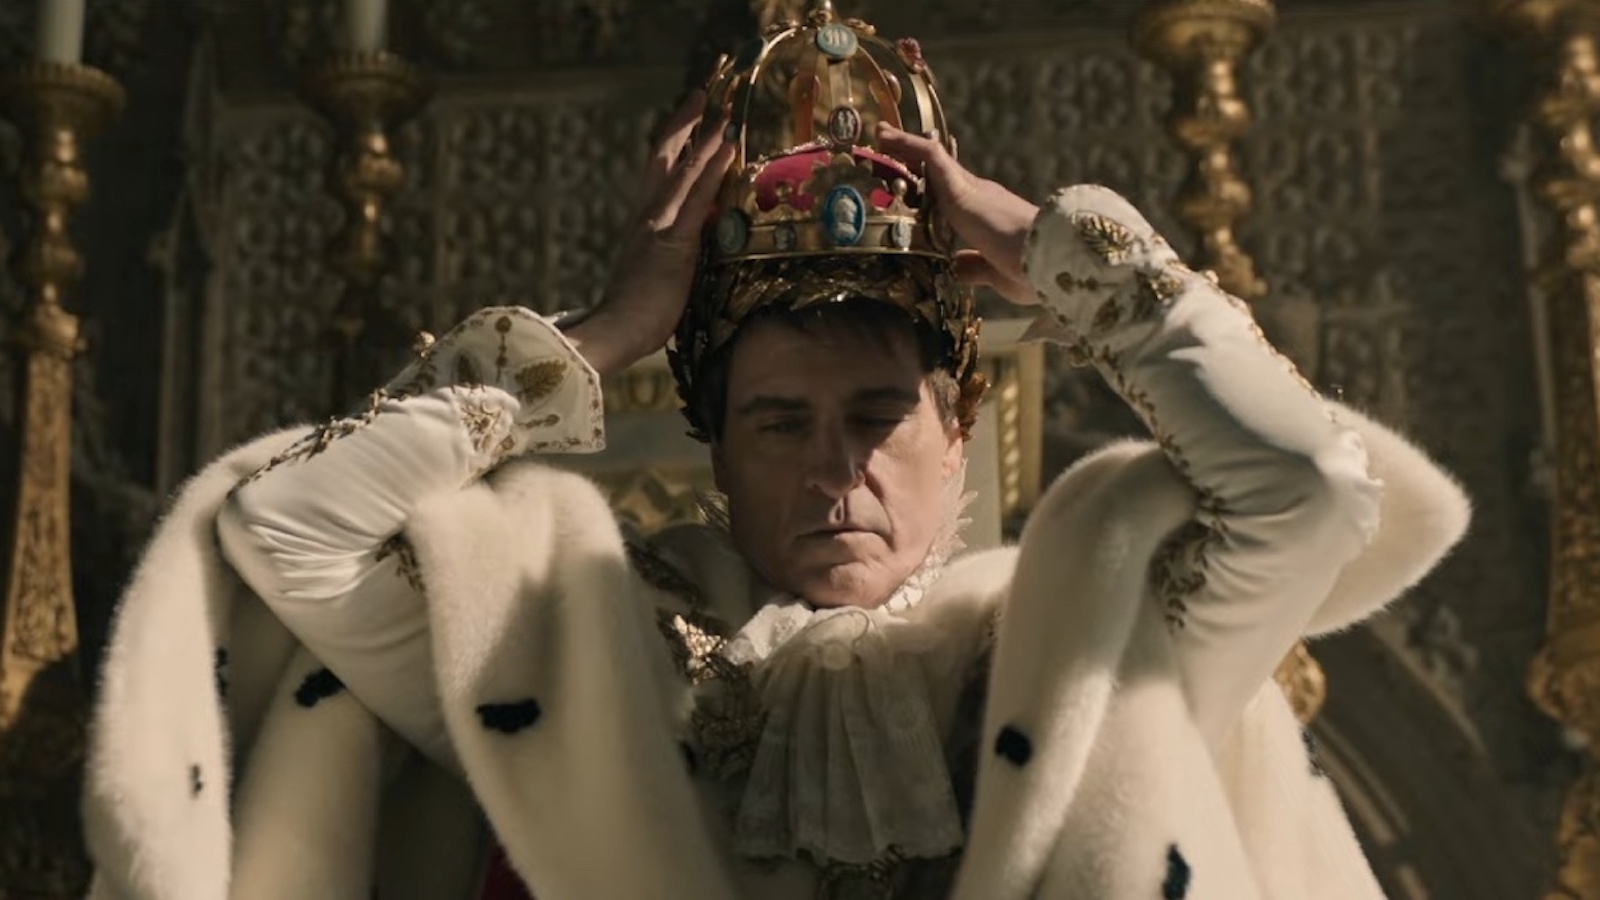 Napoleon segna il peggior punteggio su Rotten Tomatoes di Joaquin Phoenix in 10 anni